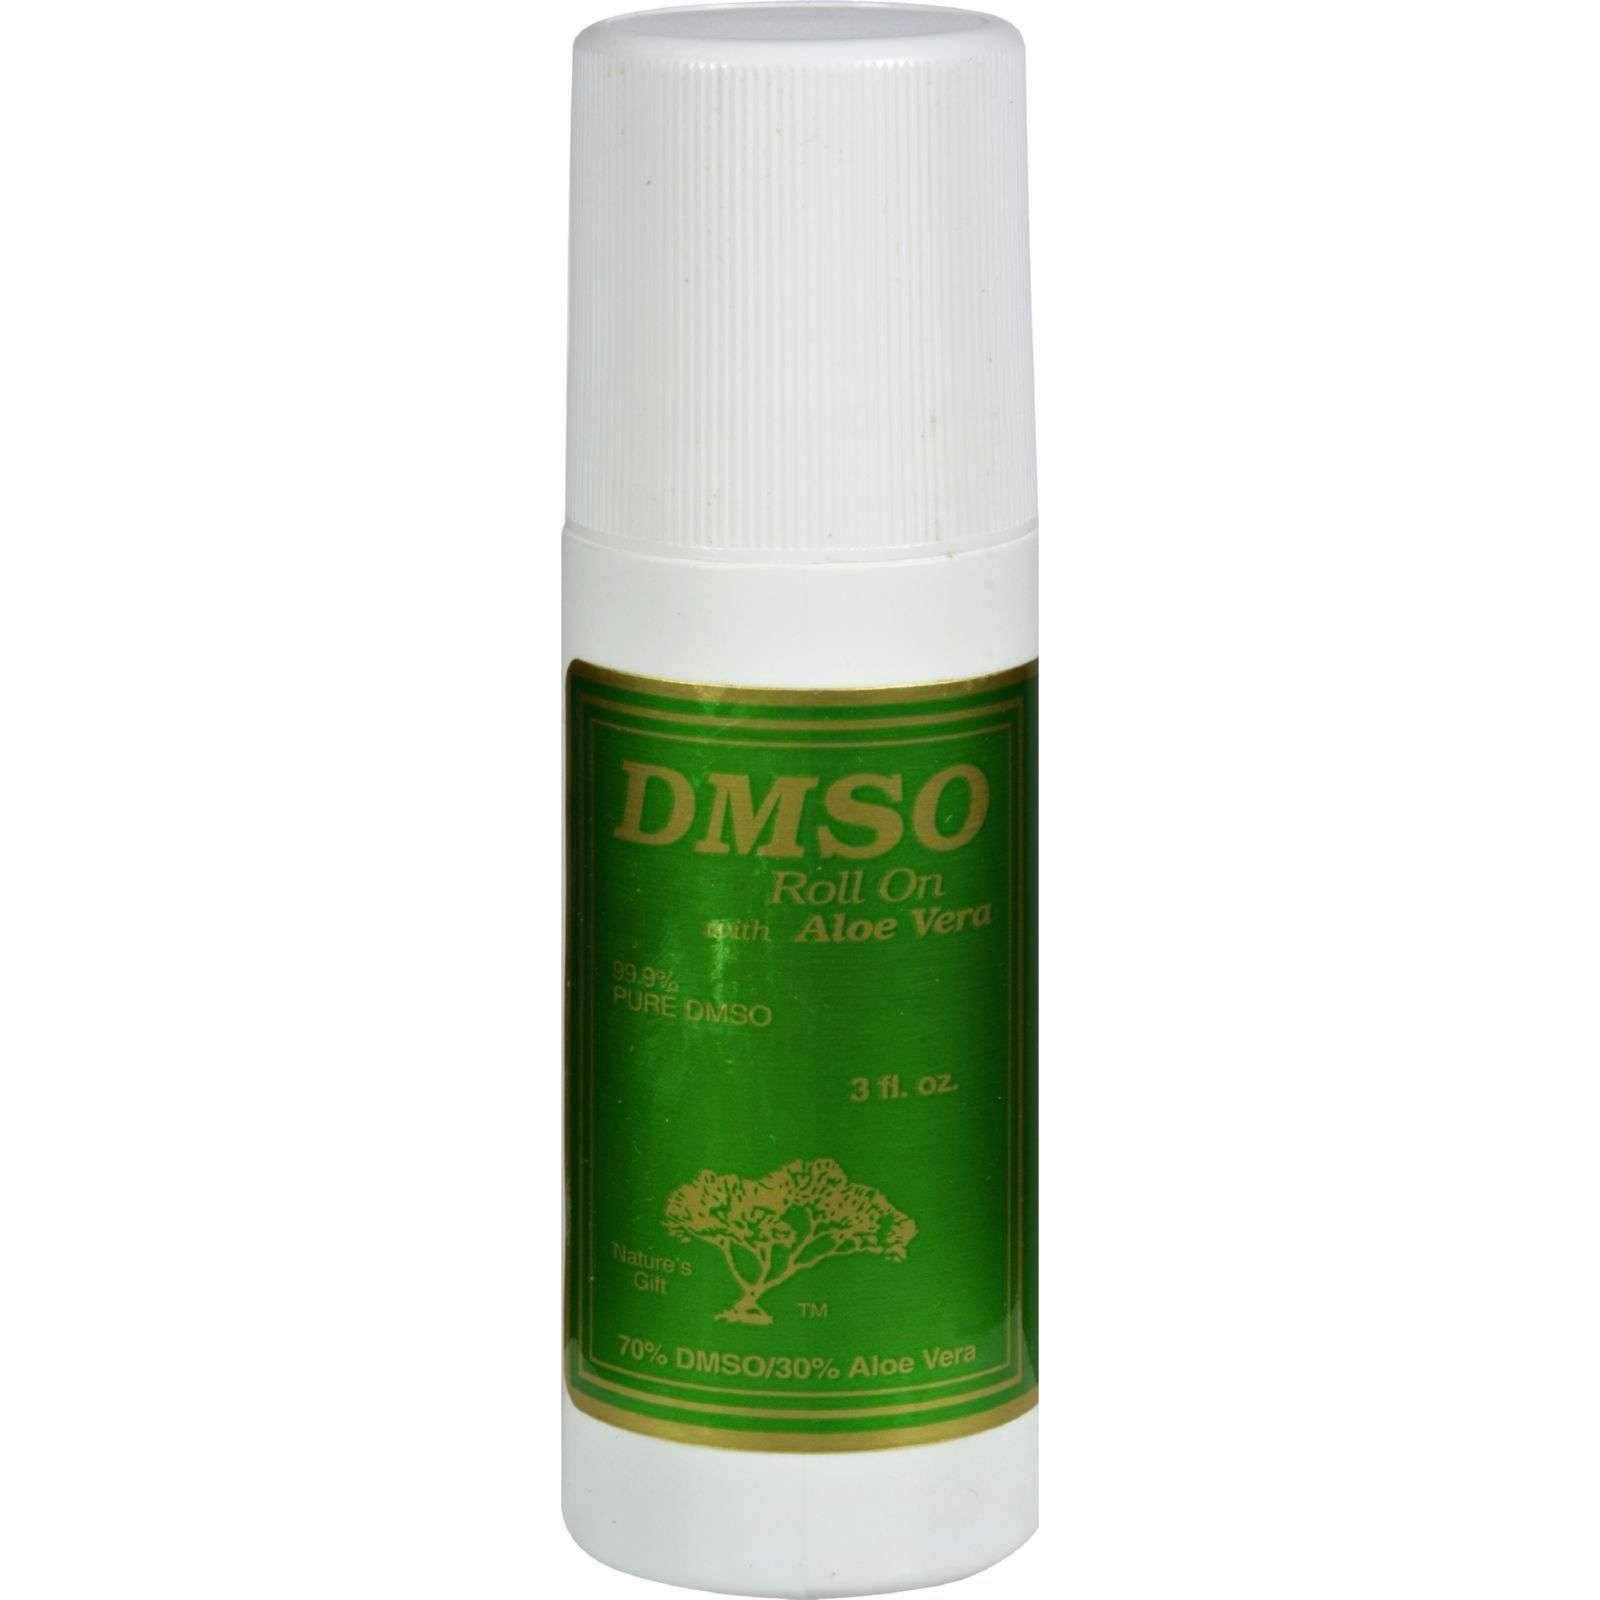 DMSO Roll-On - 3 fl oz, with Aloe